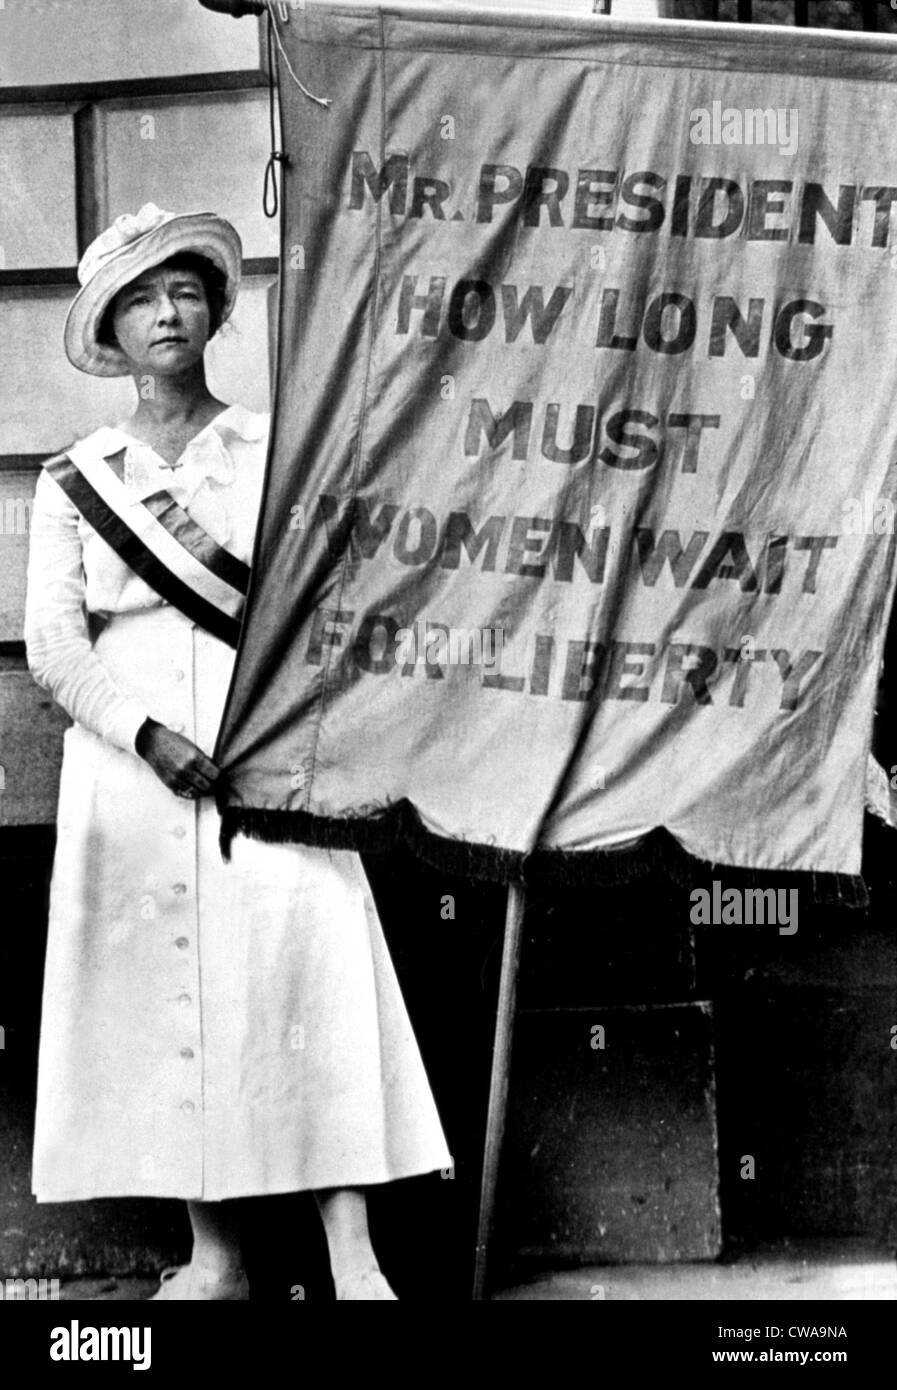 Una manifestación a favor de la igualdad de derechos para la mujer, EE.UU., 1910s. Cortesía: CSU Archives / Everett Collection Foto de stock